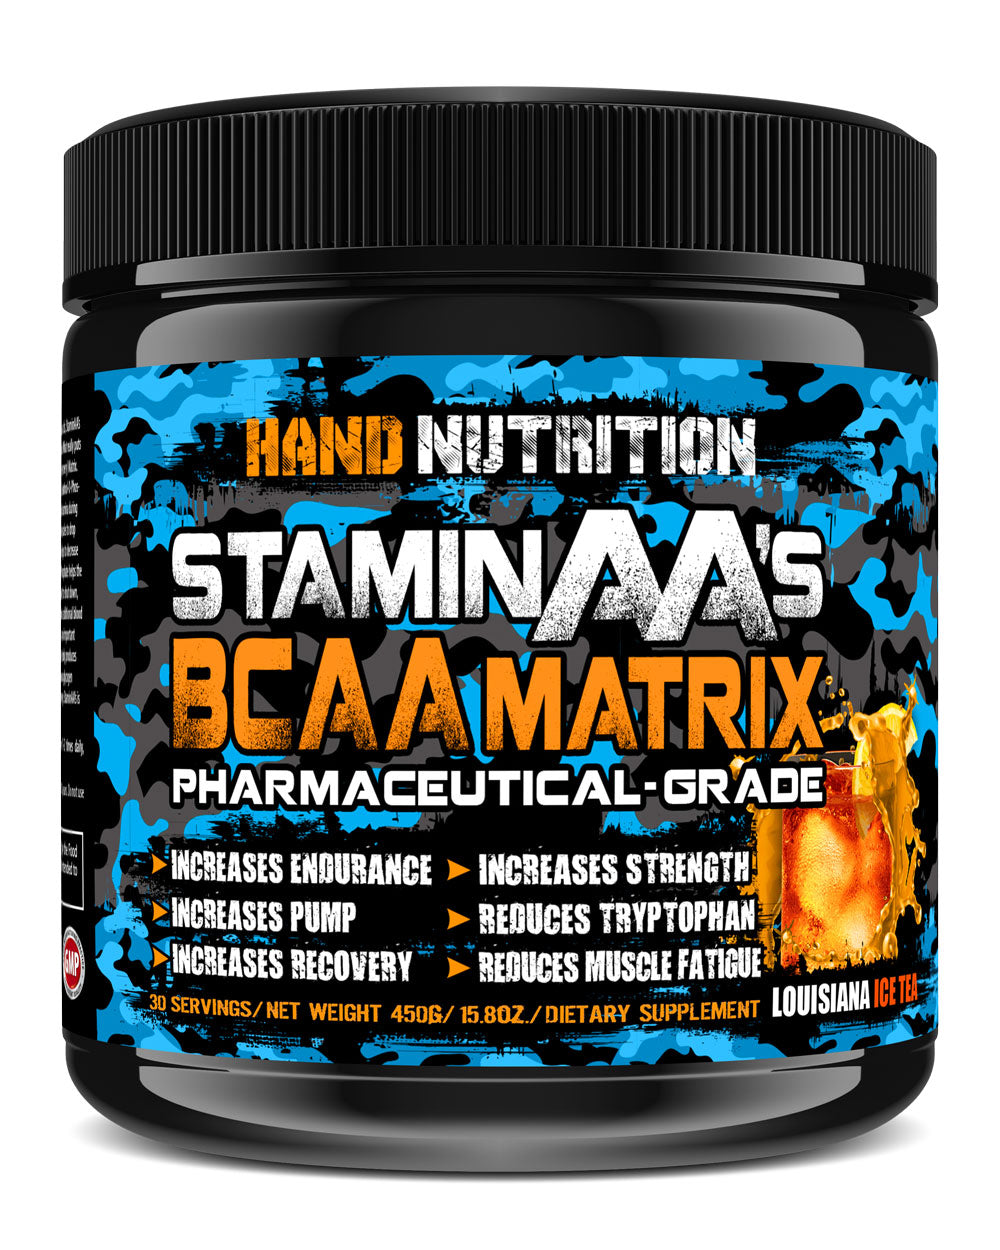 Staminaas Pharma-grade Delicious Flavors – Hand Nutrition